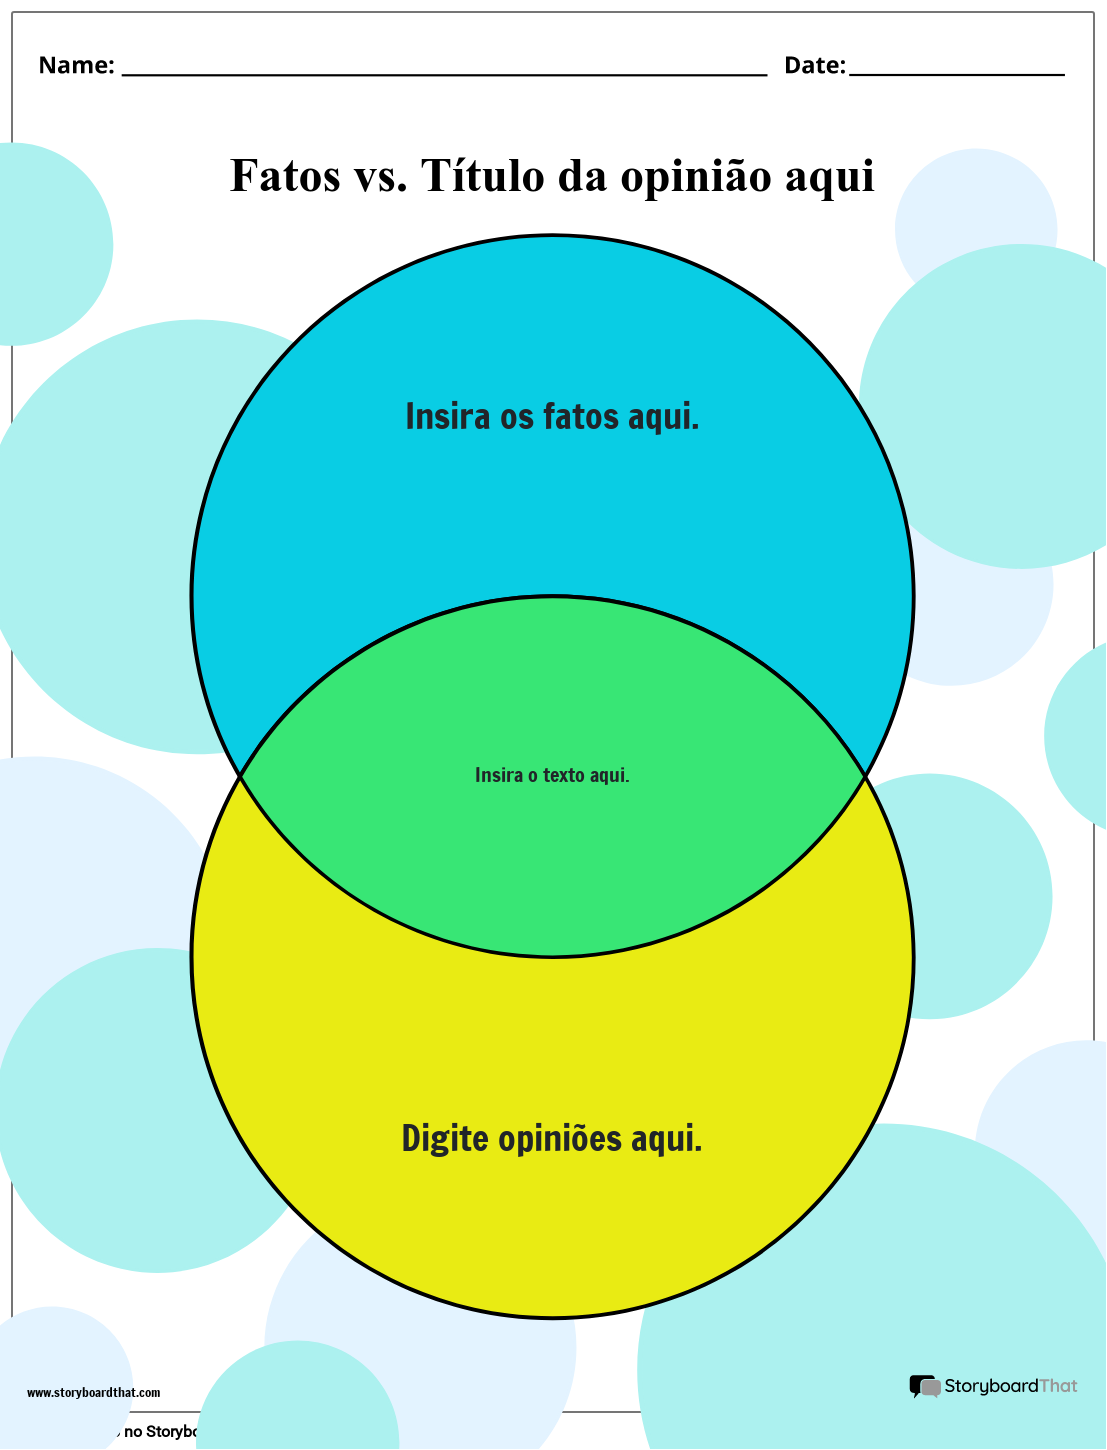 Novo Modelo de Fato vs. Opinião de Página de Criação 2